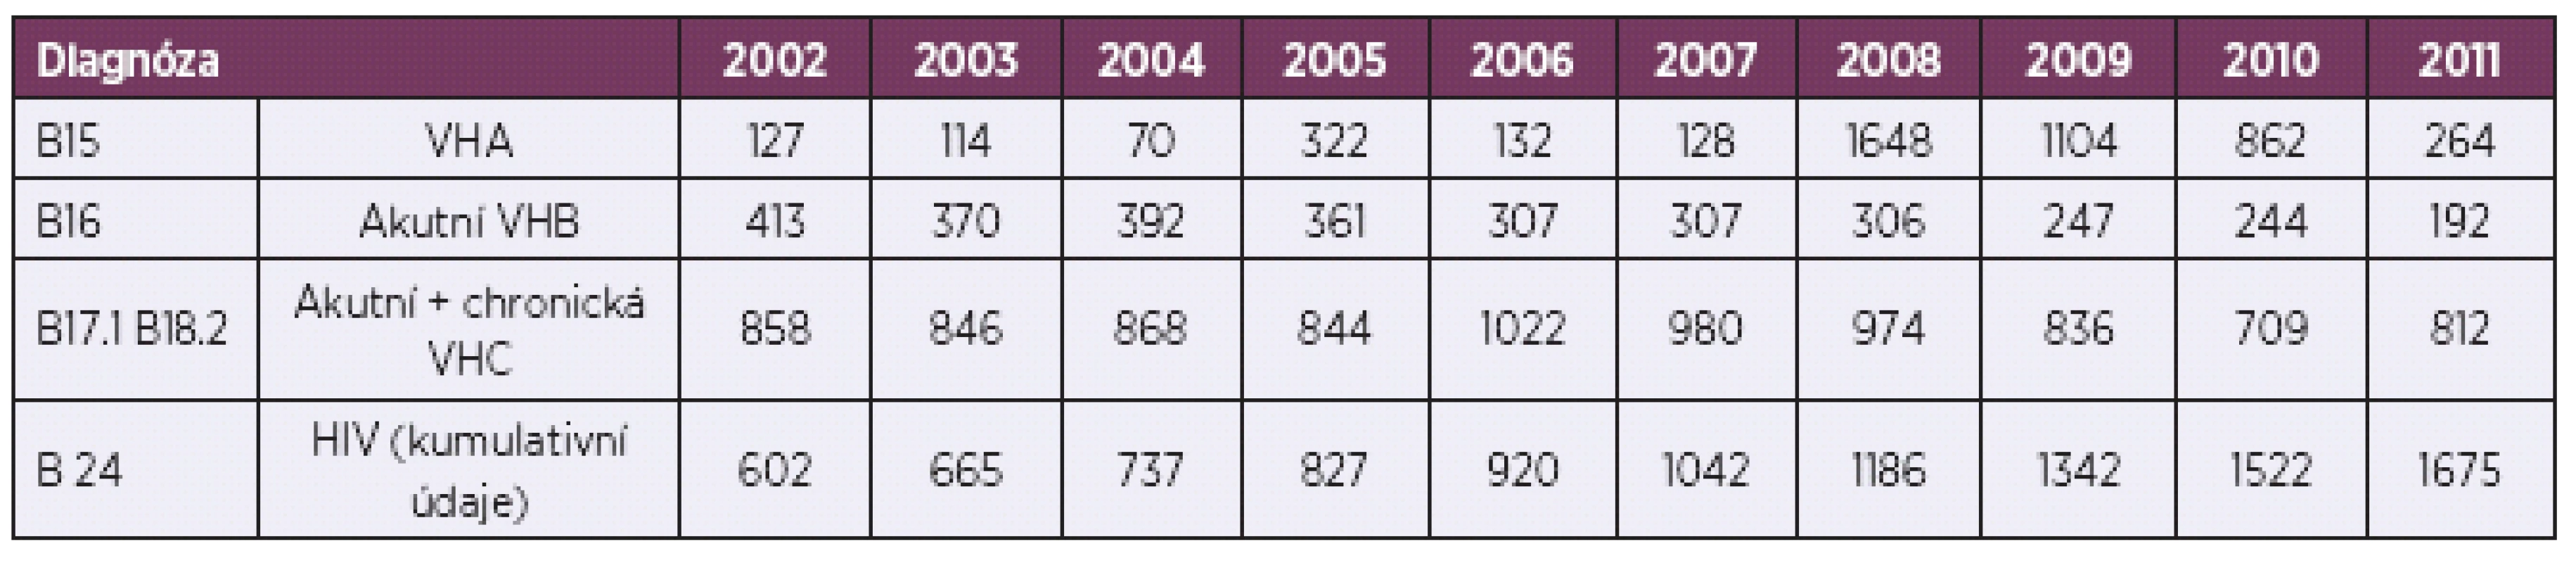 Výskyt infekcí přenosných krví v České republice v letech 2002–2011, absolutní počty